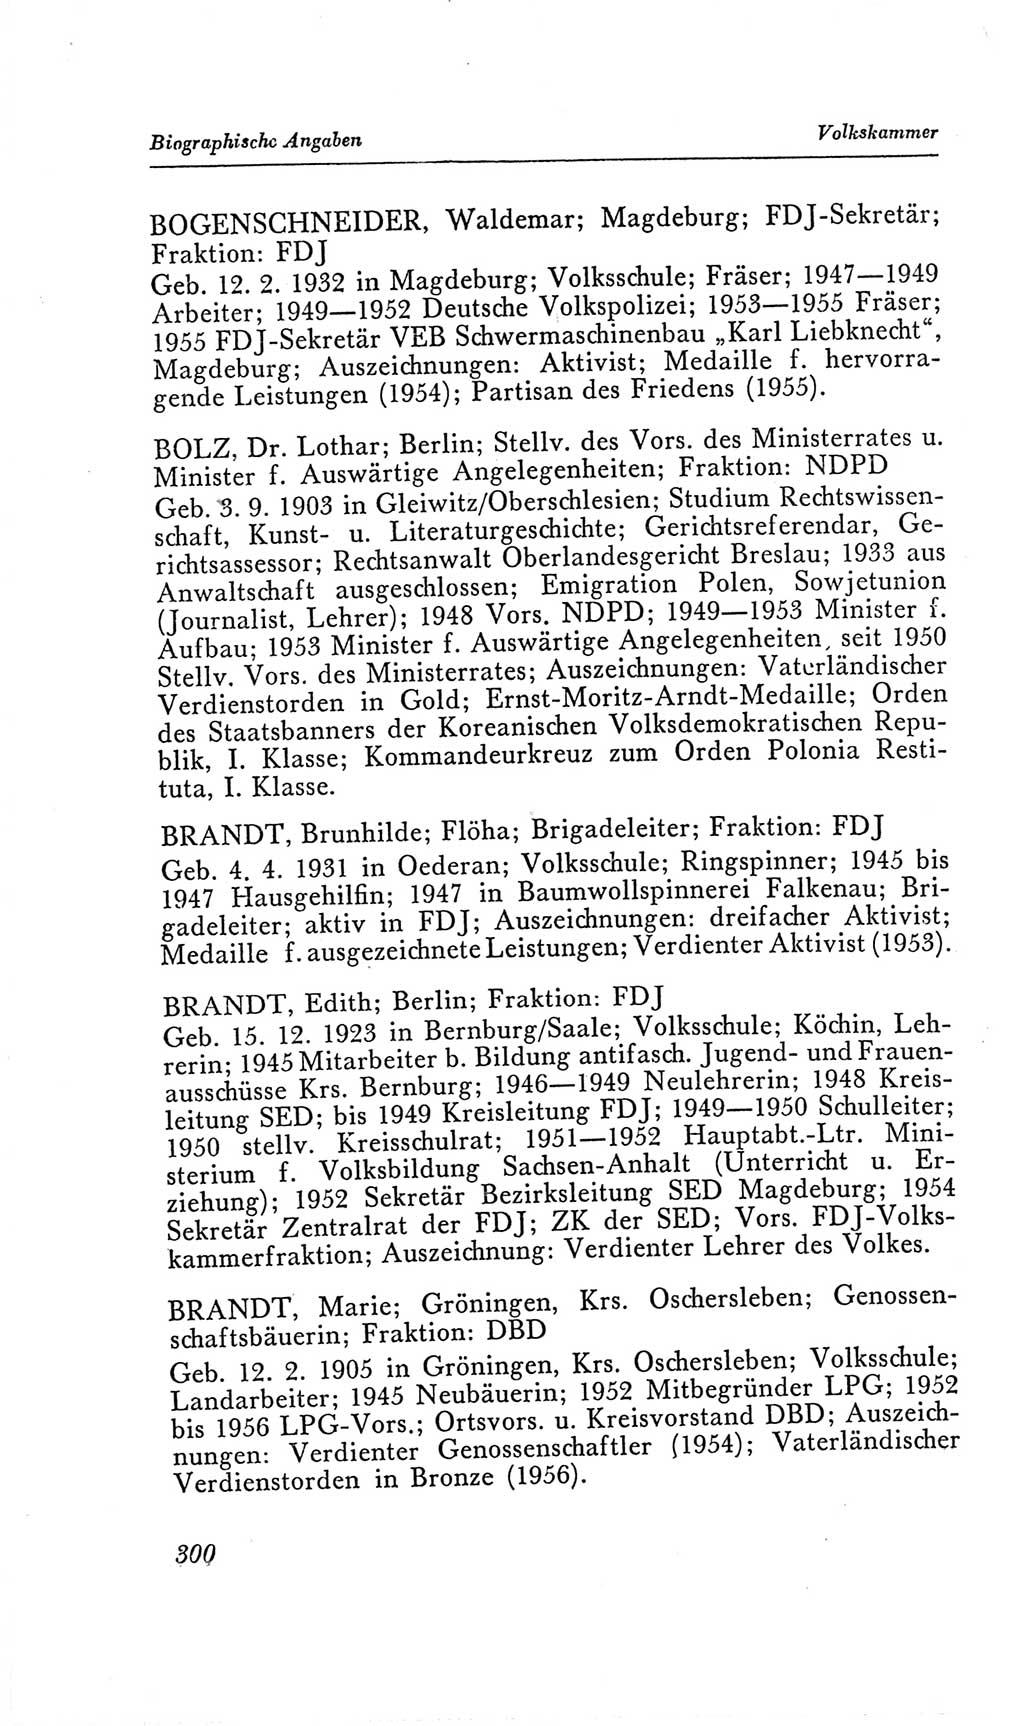 Handbuch der Volkskammer (VK) der Deutschen Demokratischen Republik (DDR), 2. Wahlperiode 1954-1958, Seite 300 (Hdb. VK. DDR, 2. WP. 1954-1958, S. 300)